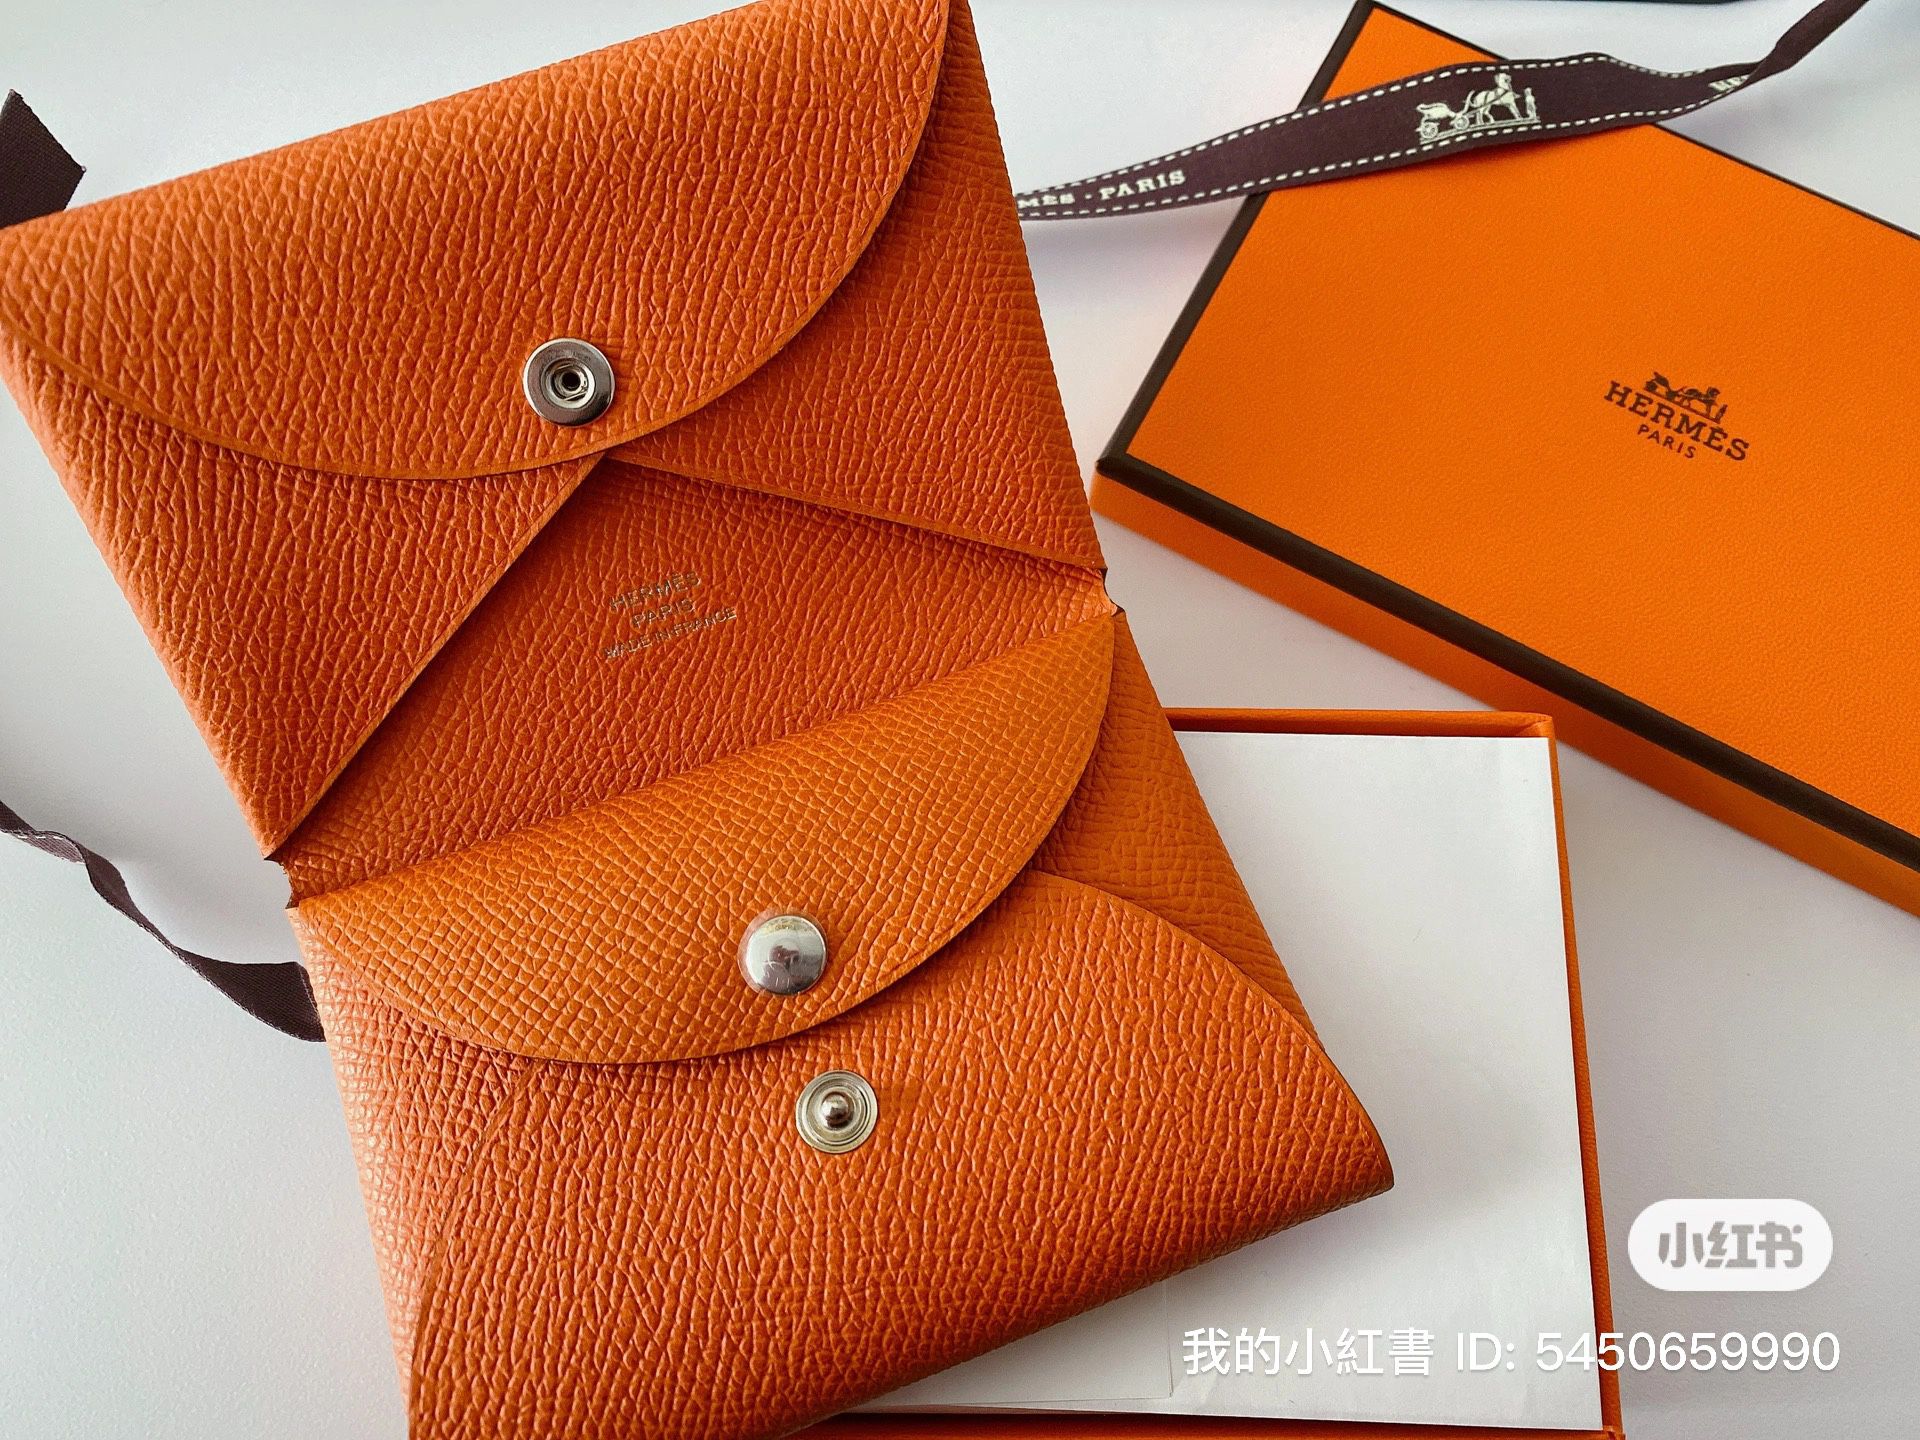 Hermès 2020 Calvi Cardholder - Orange Wallets, Accessories - HER556029